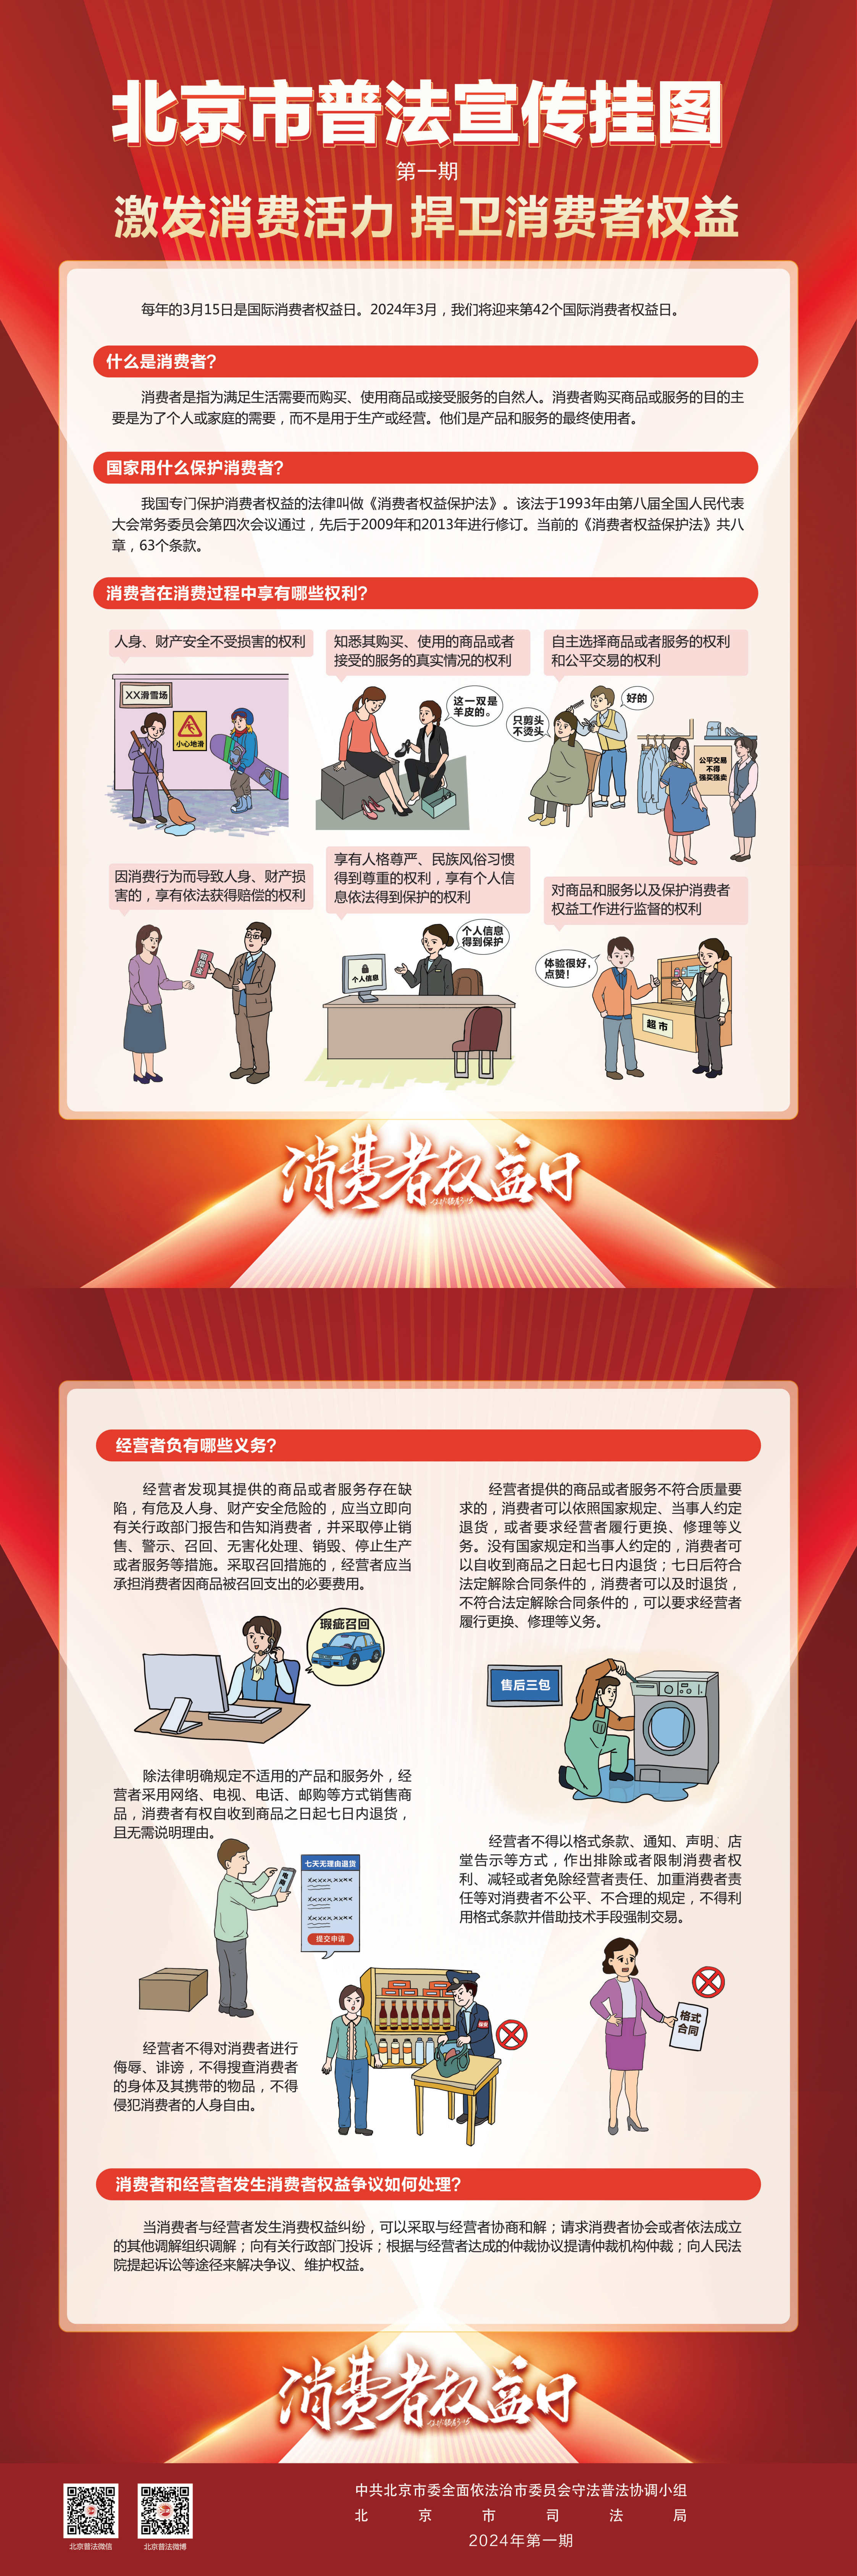 北京市普法宣传挂图第一期